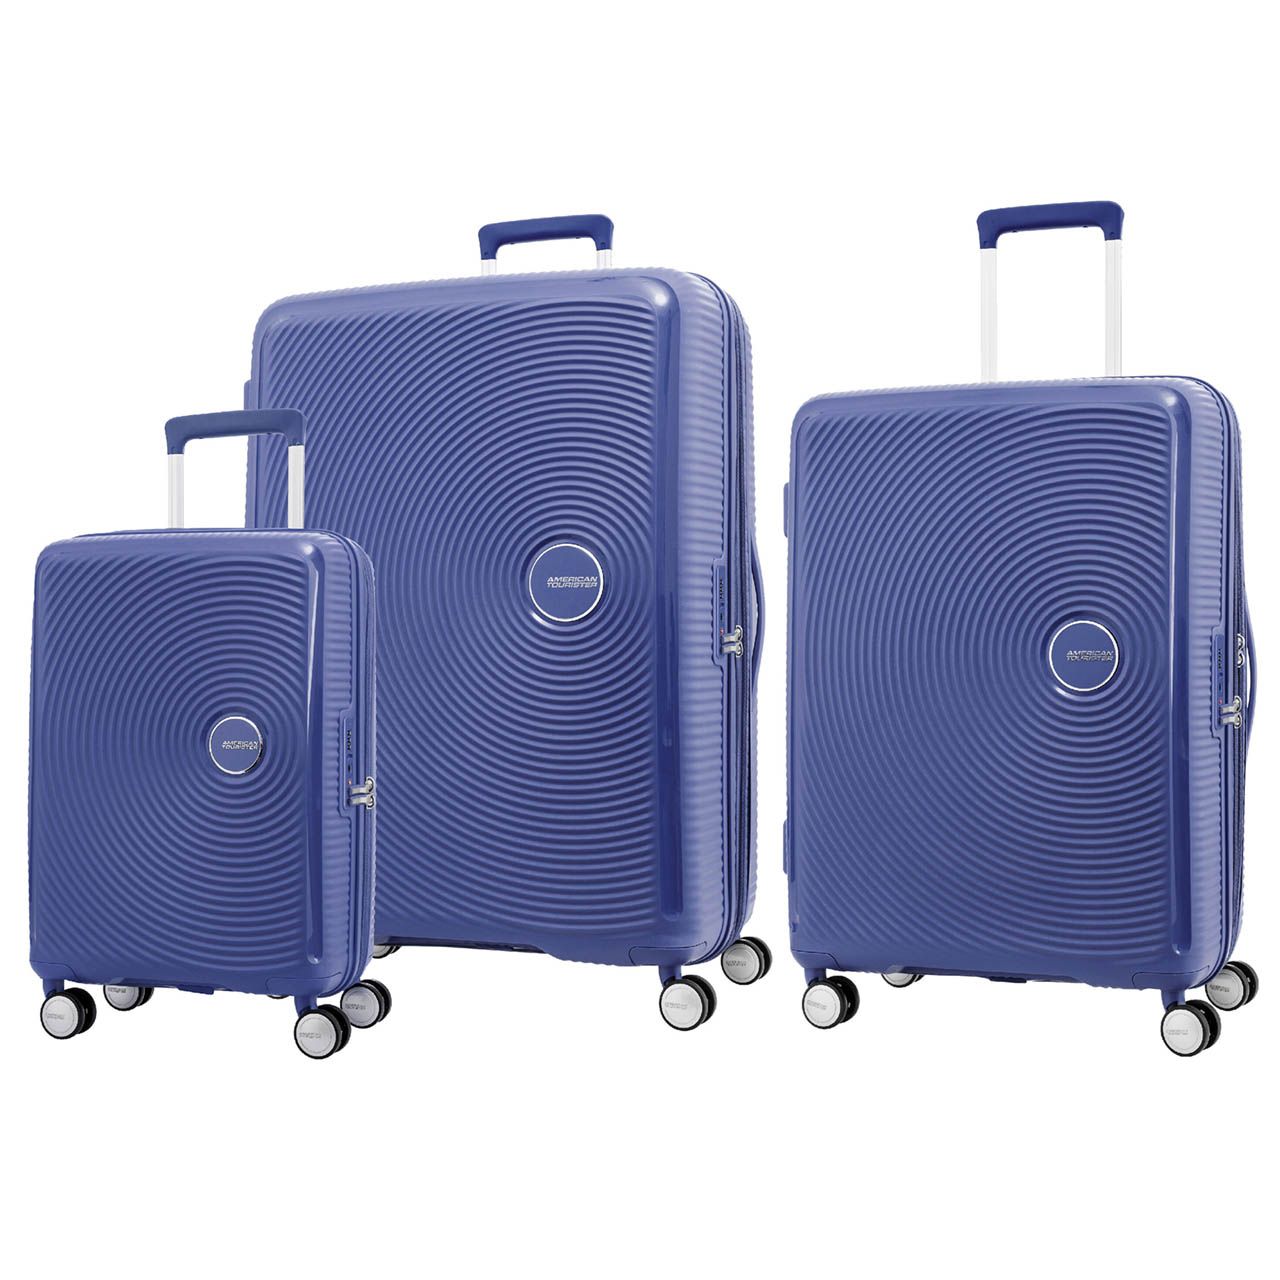 مجموعه سه عددی چمدان امریکن توریستر مدل CURIO AO8 -  - 1